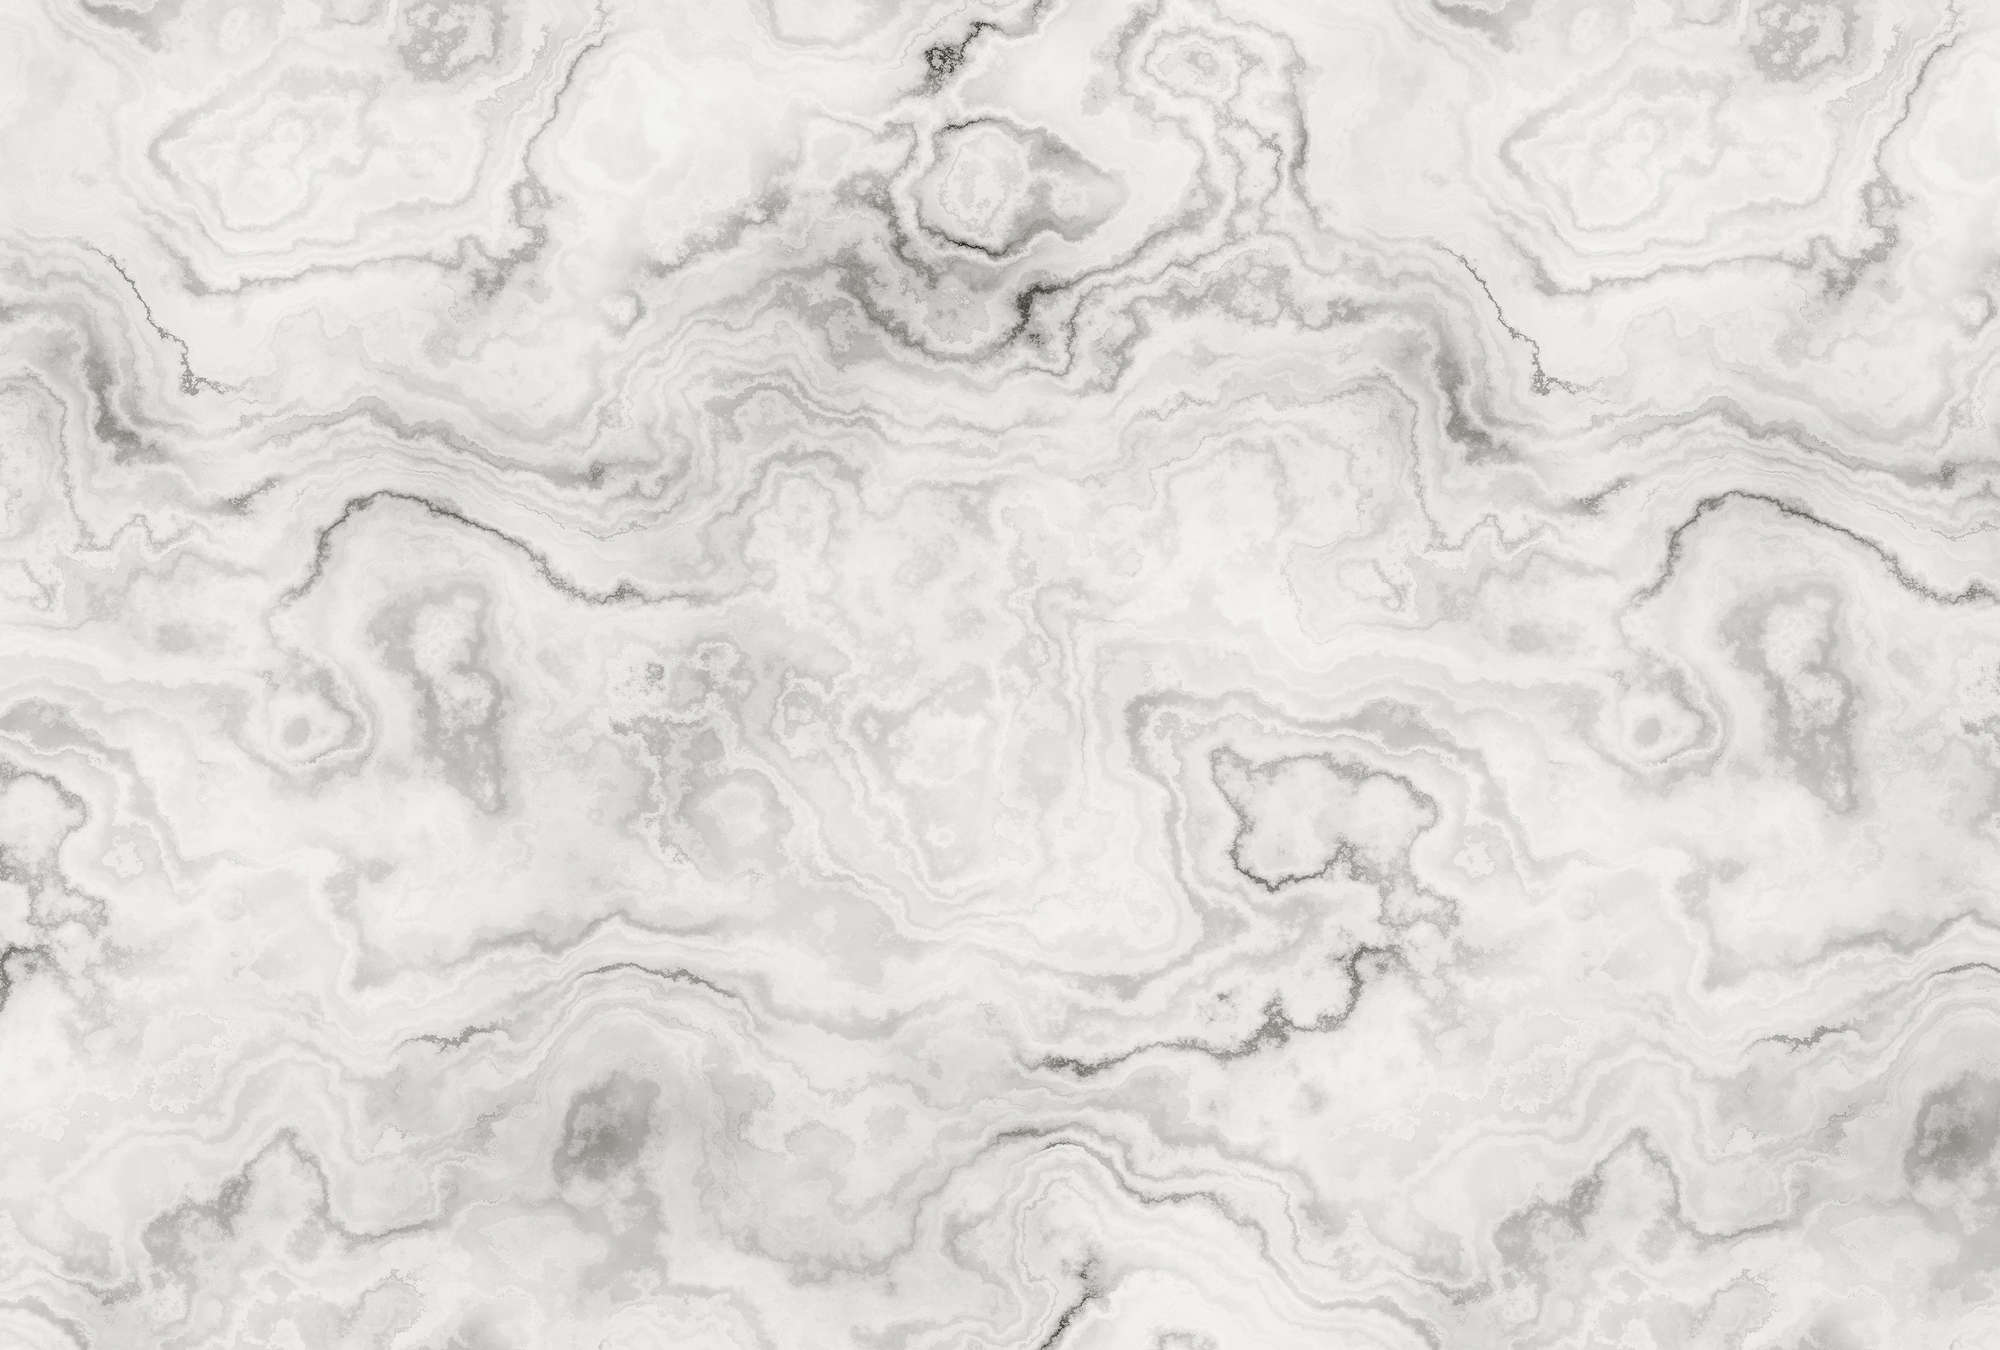             Carrara 1 - Papel pintado elegante efecto mármol - Gris, Blanco | Vellón liso Premium
        